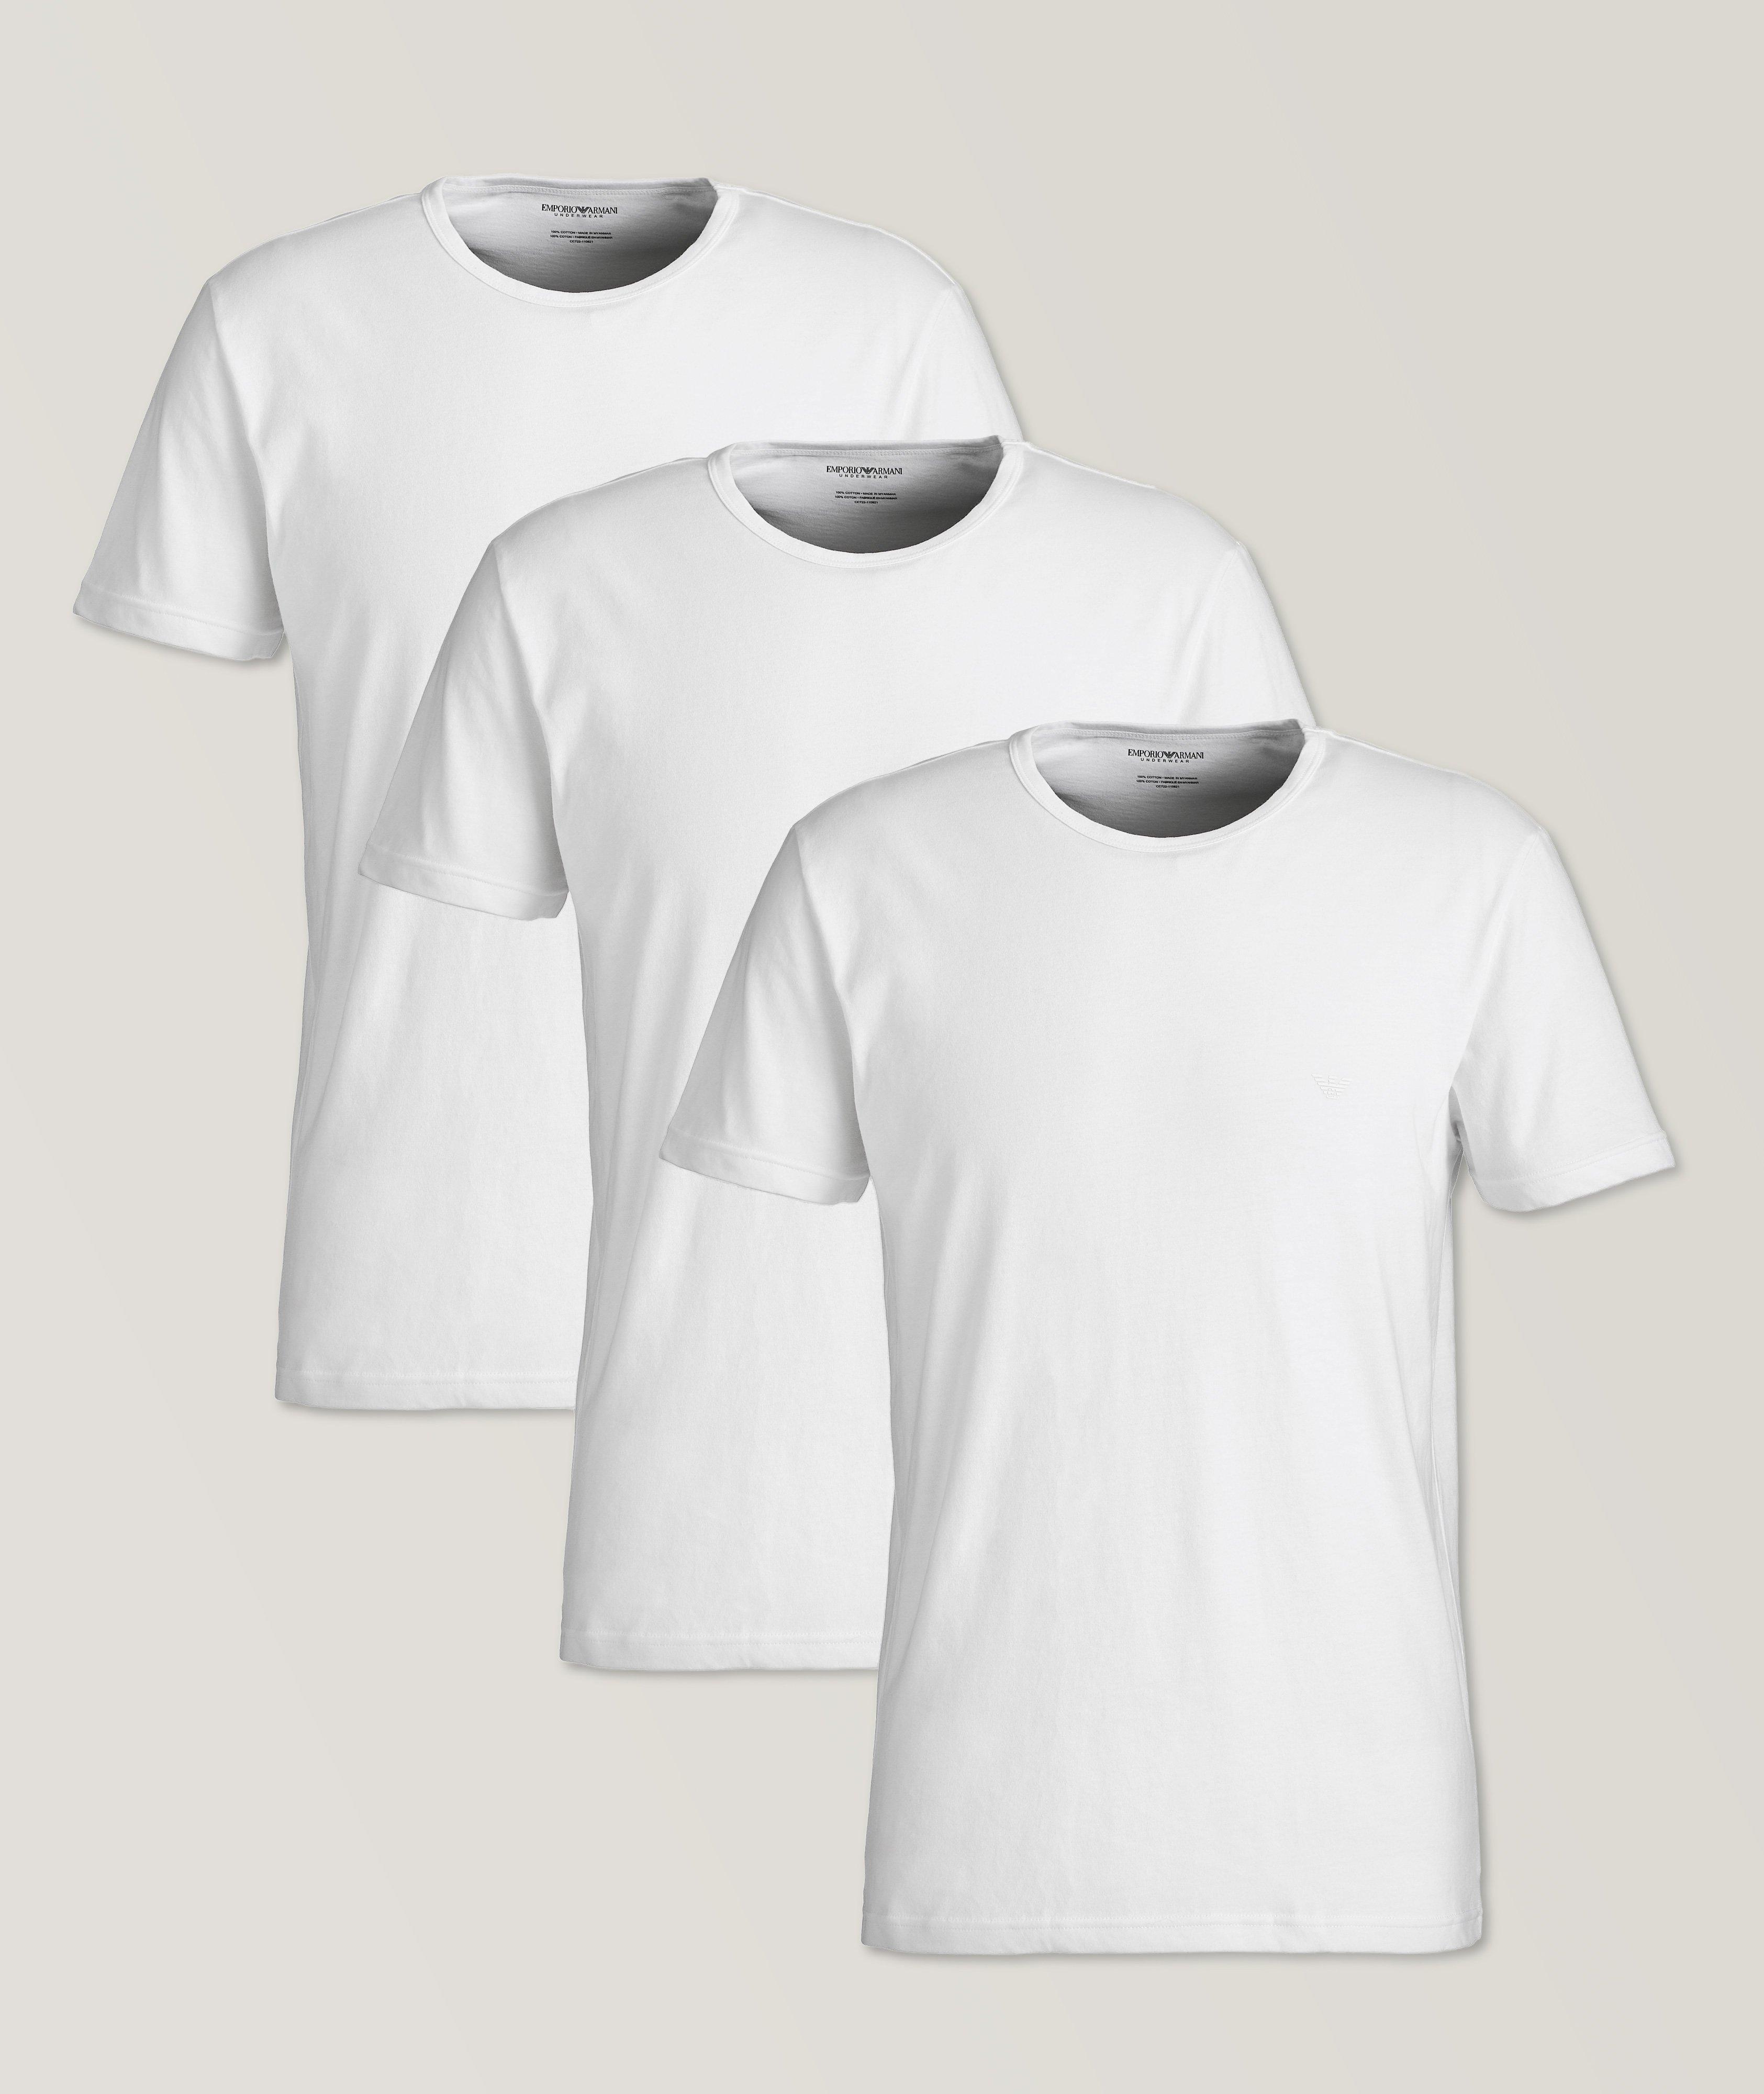 Emporio Armani 3-Pack Cotton T-Shirts, Underwear